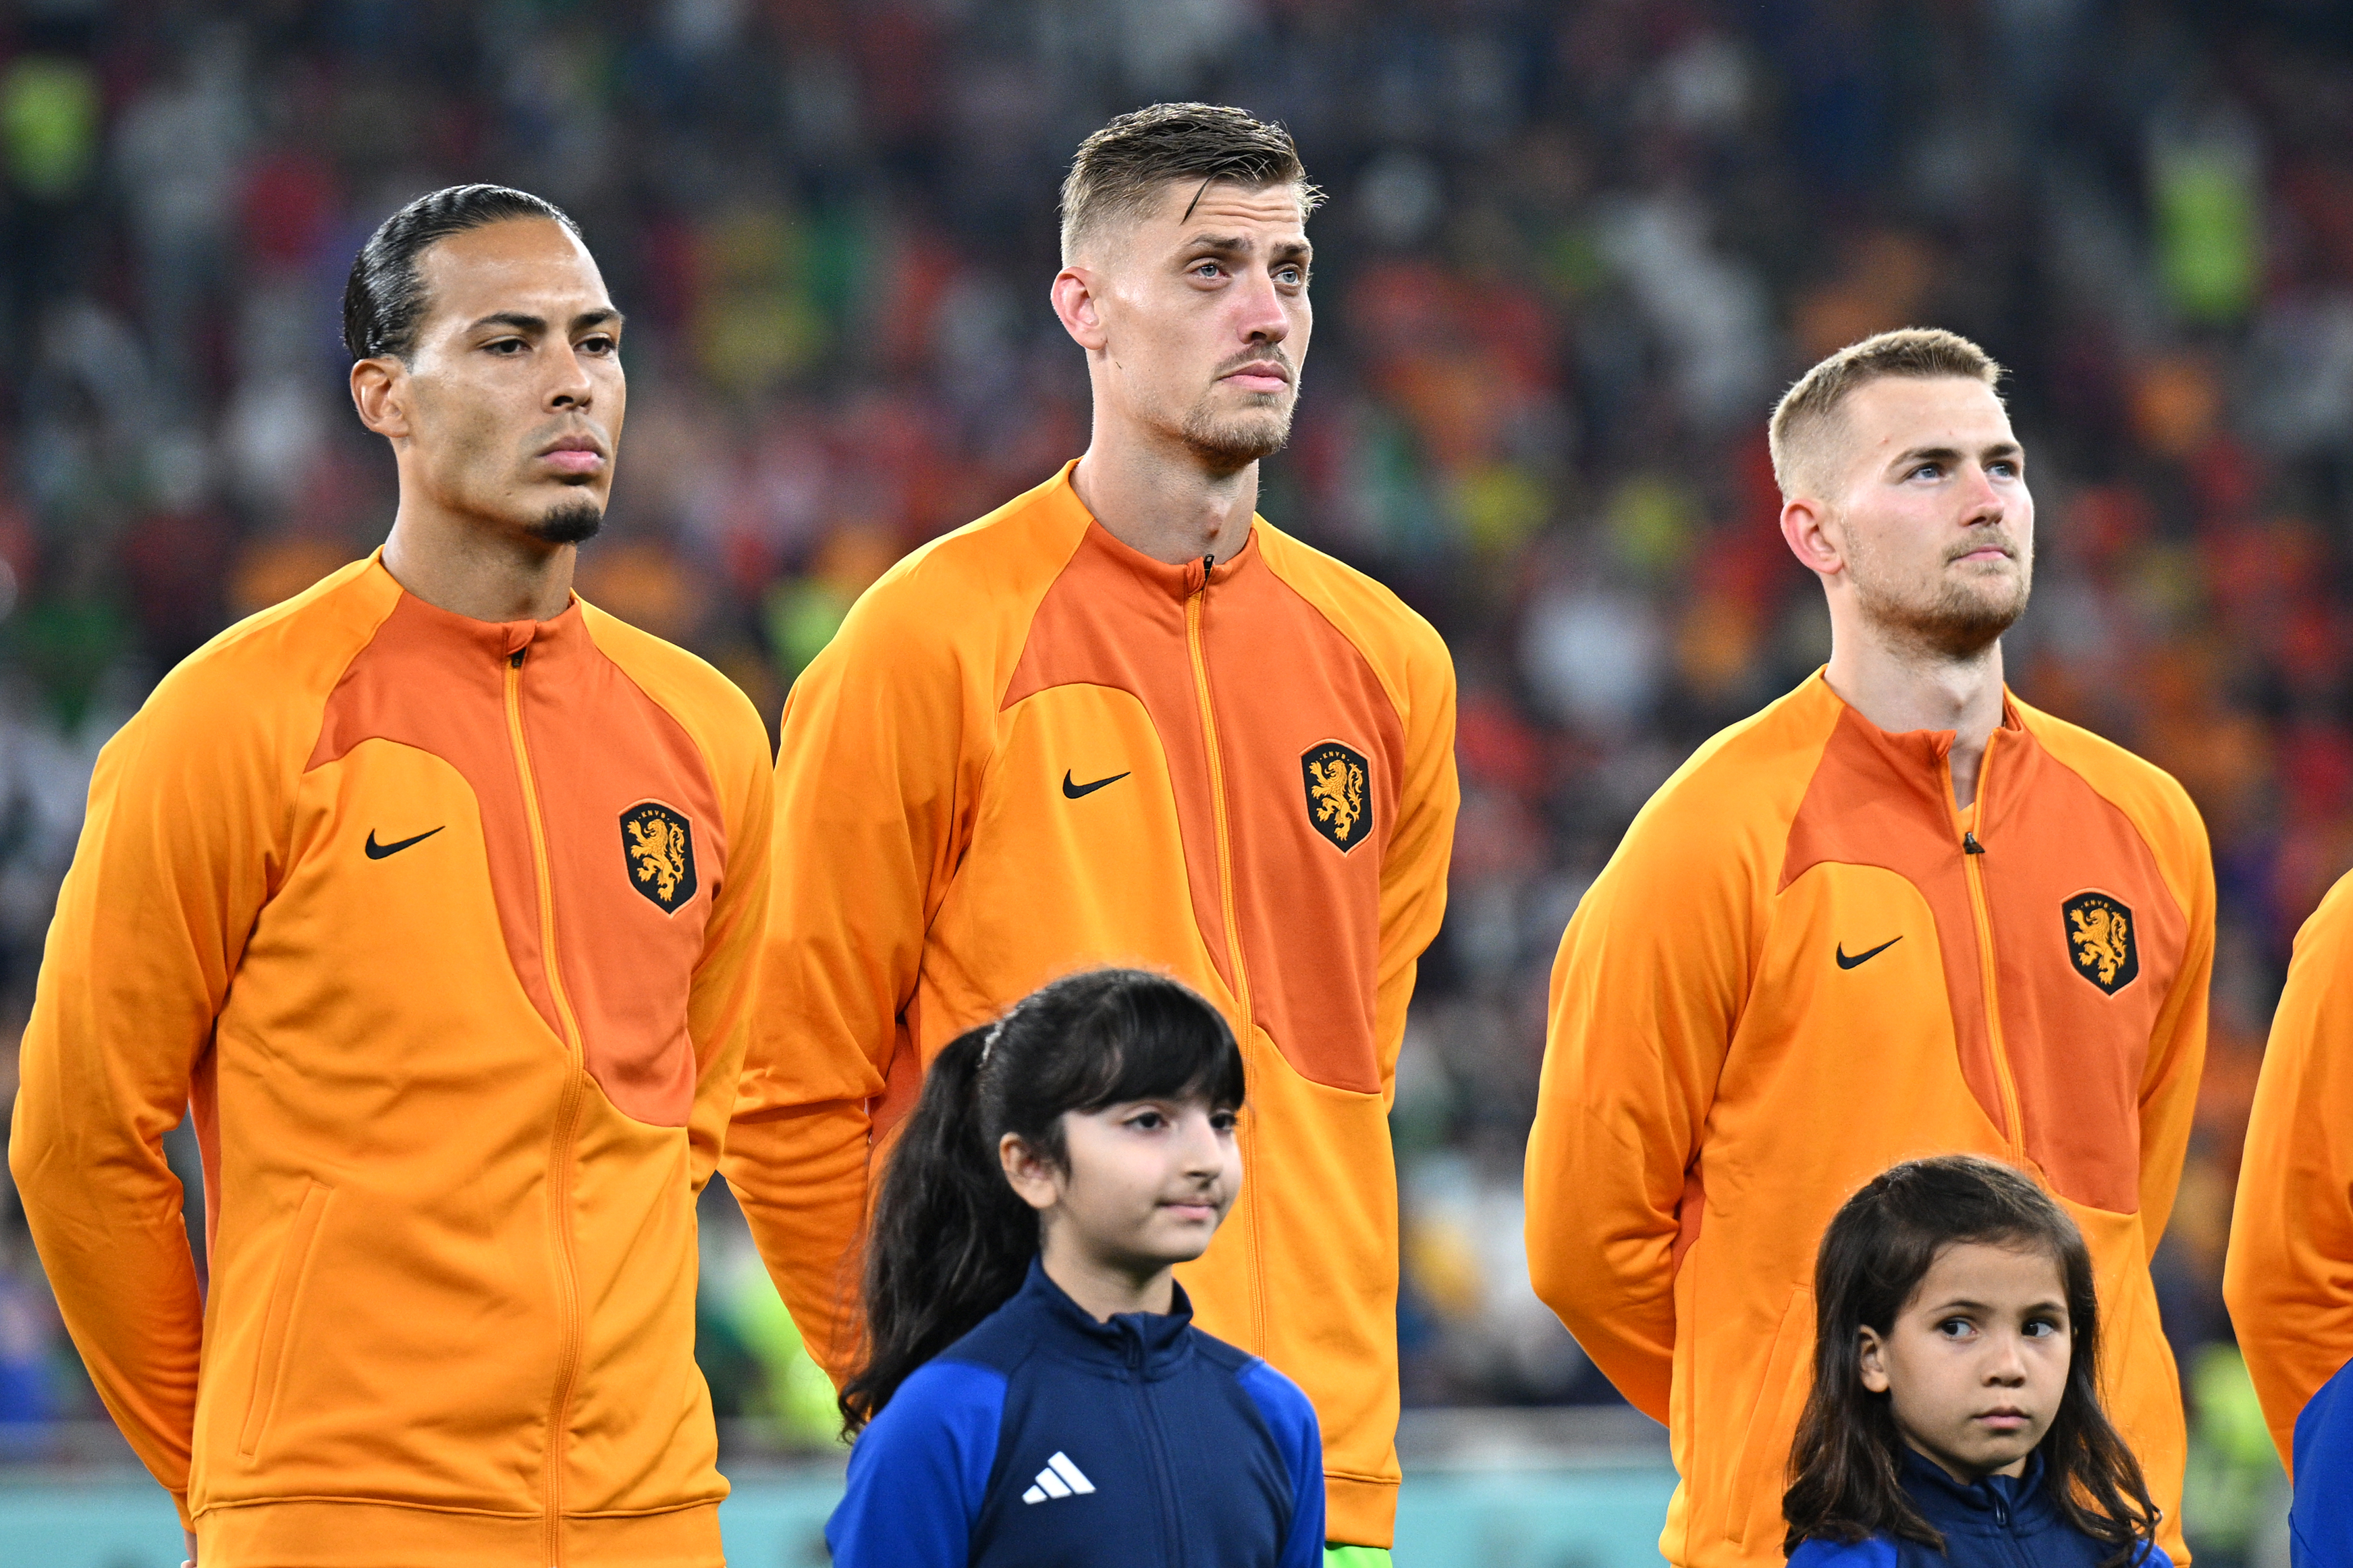 Olanda - Ecuador, LIVE TEXT, 18:00, la Cupa Mondială. ”Portocala mecanică”, neînvinsă în meciurile directe. ECHIPELE